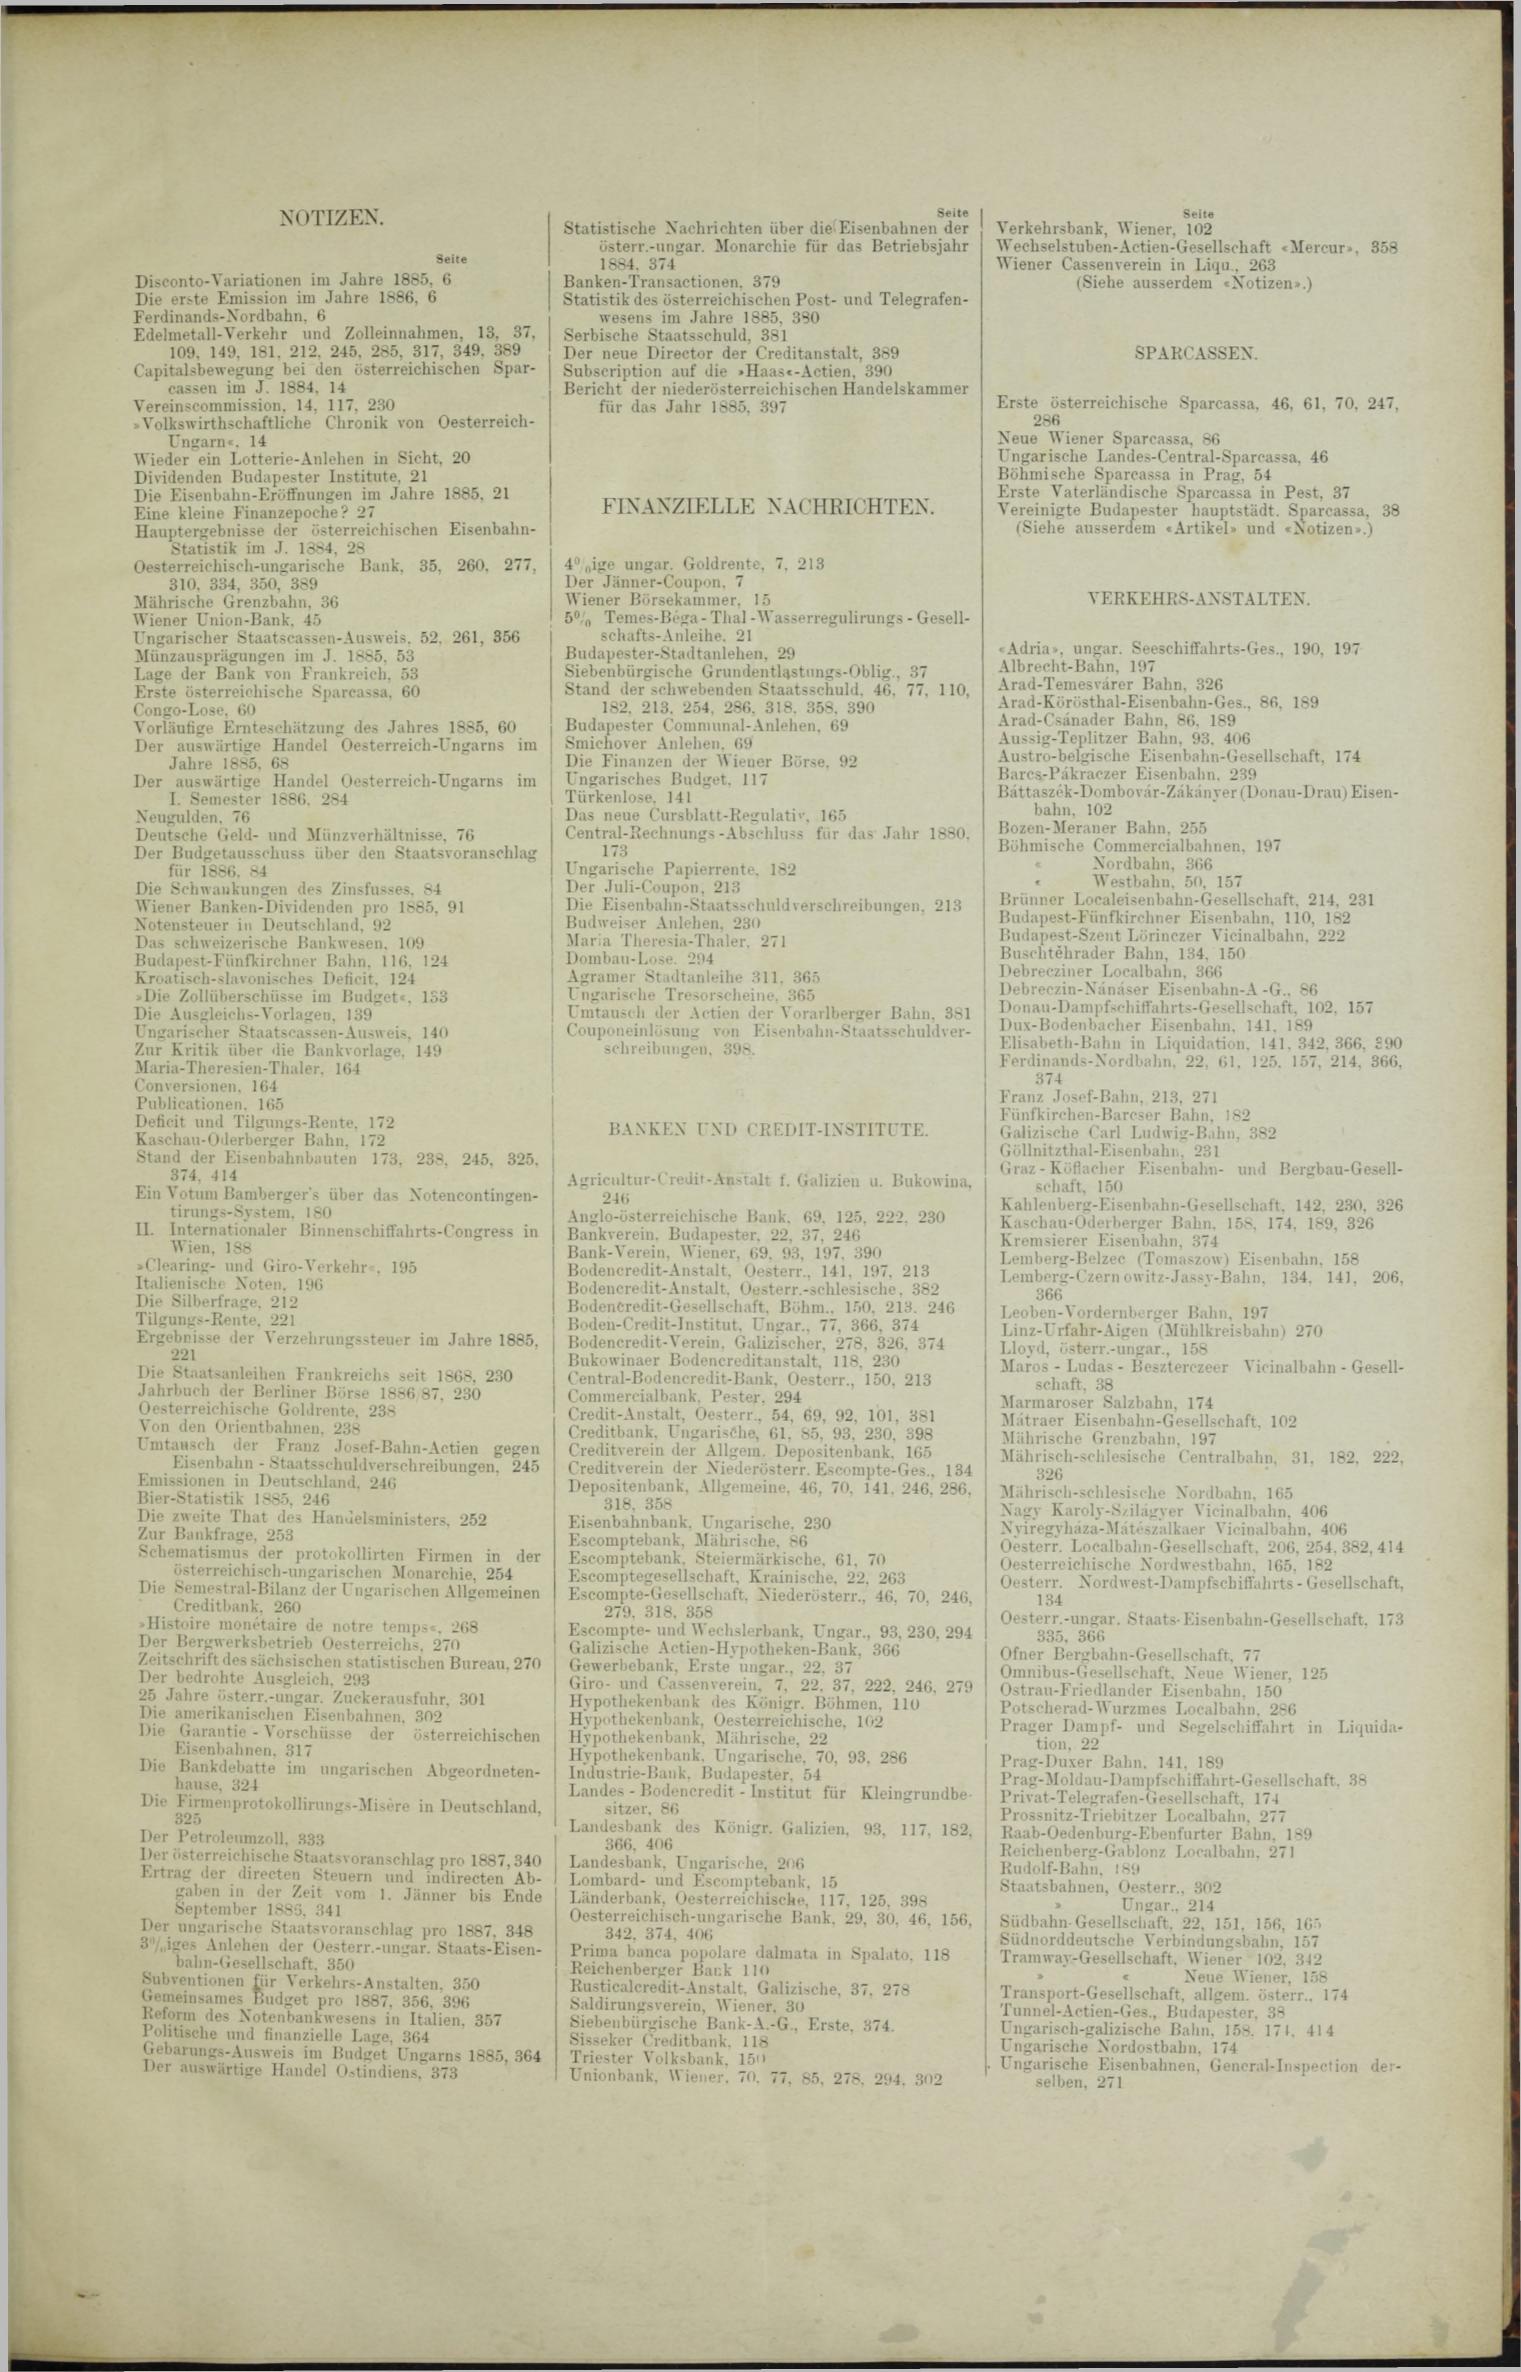 Der Tresor 16.09.1886 - Seite 11